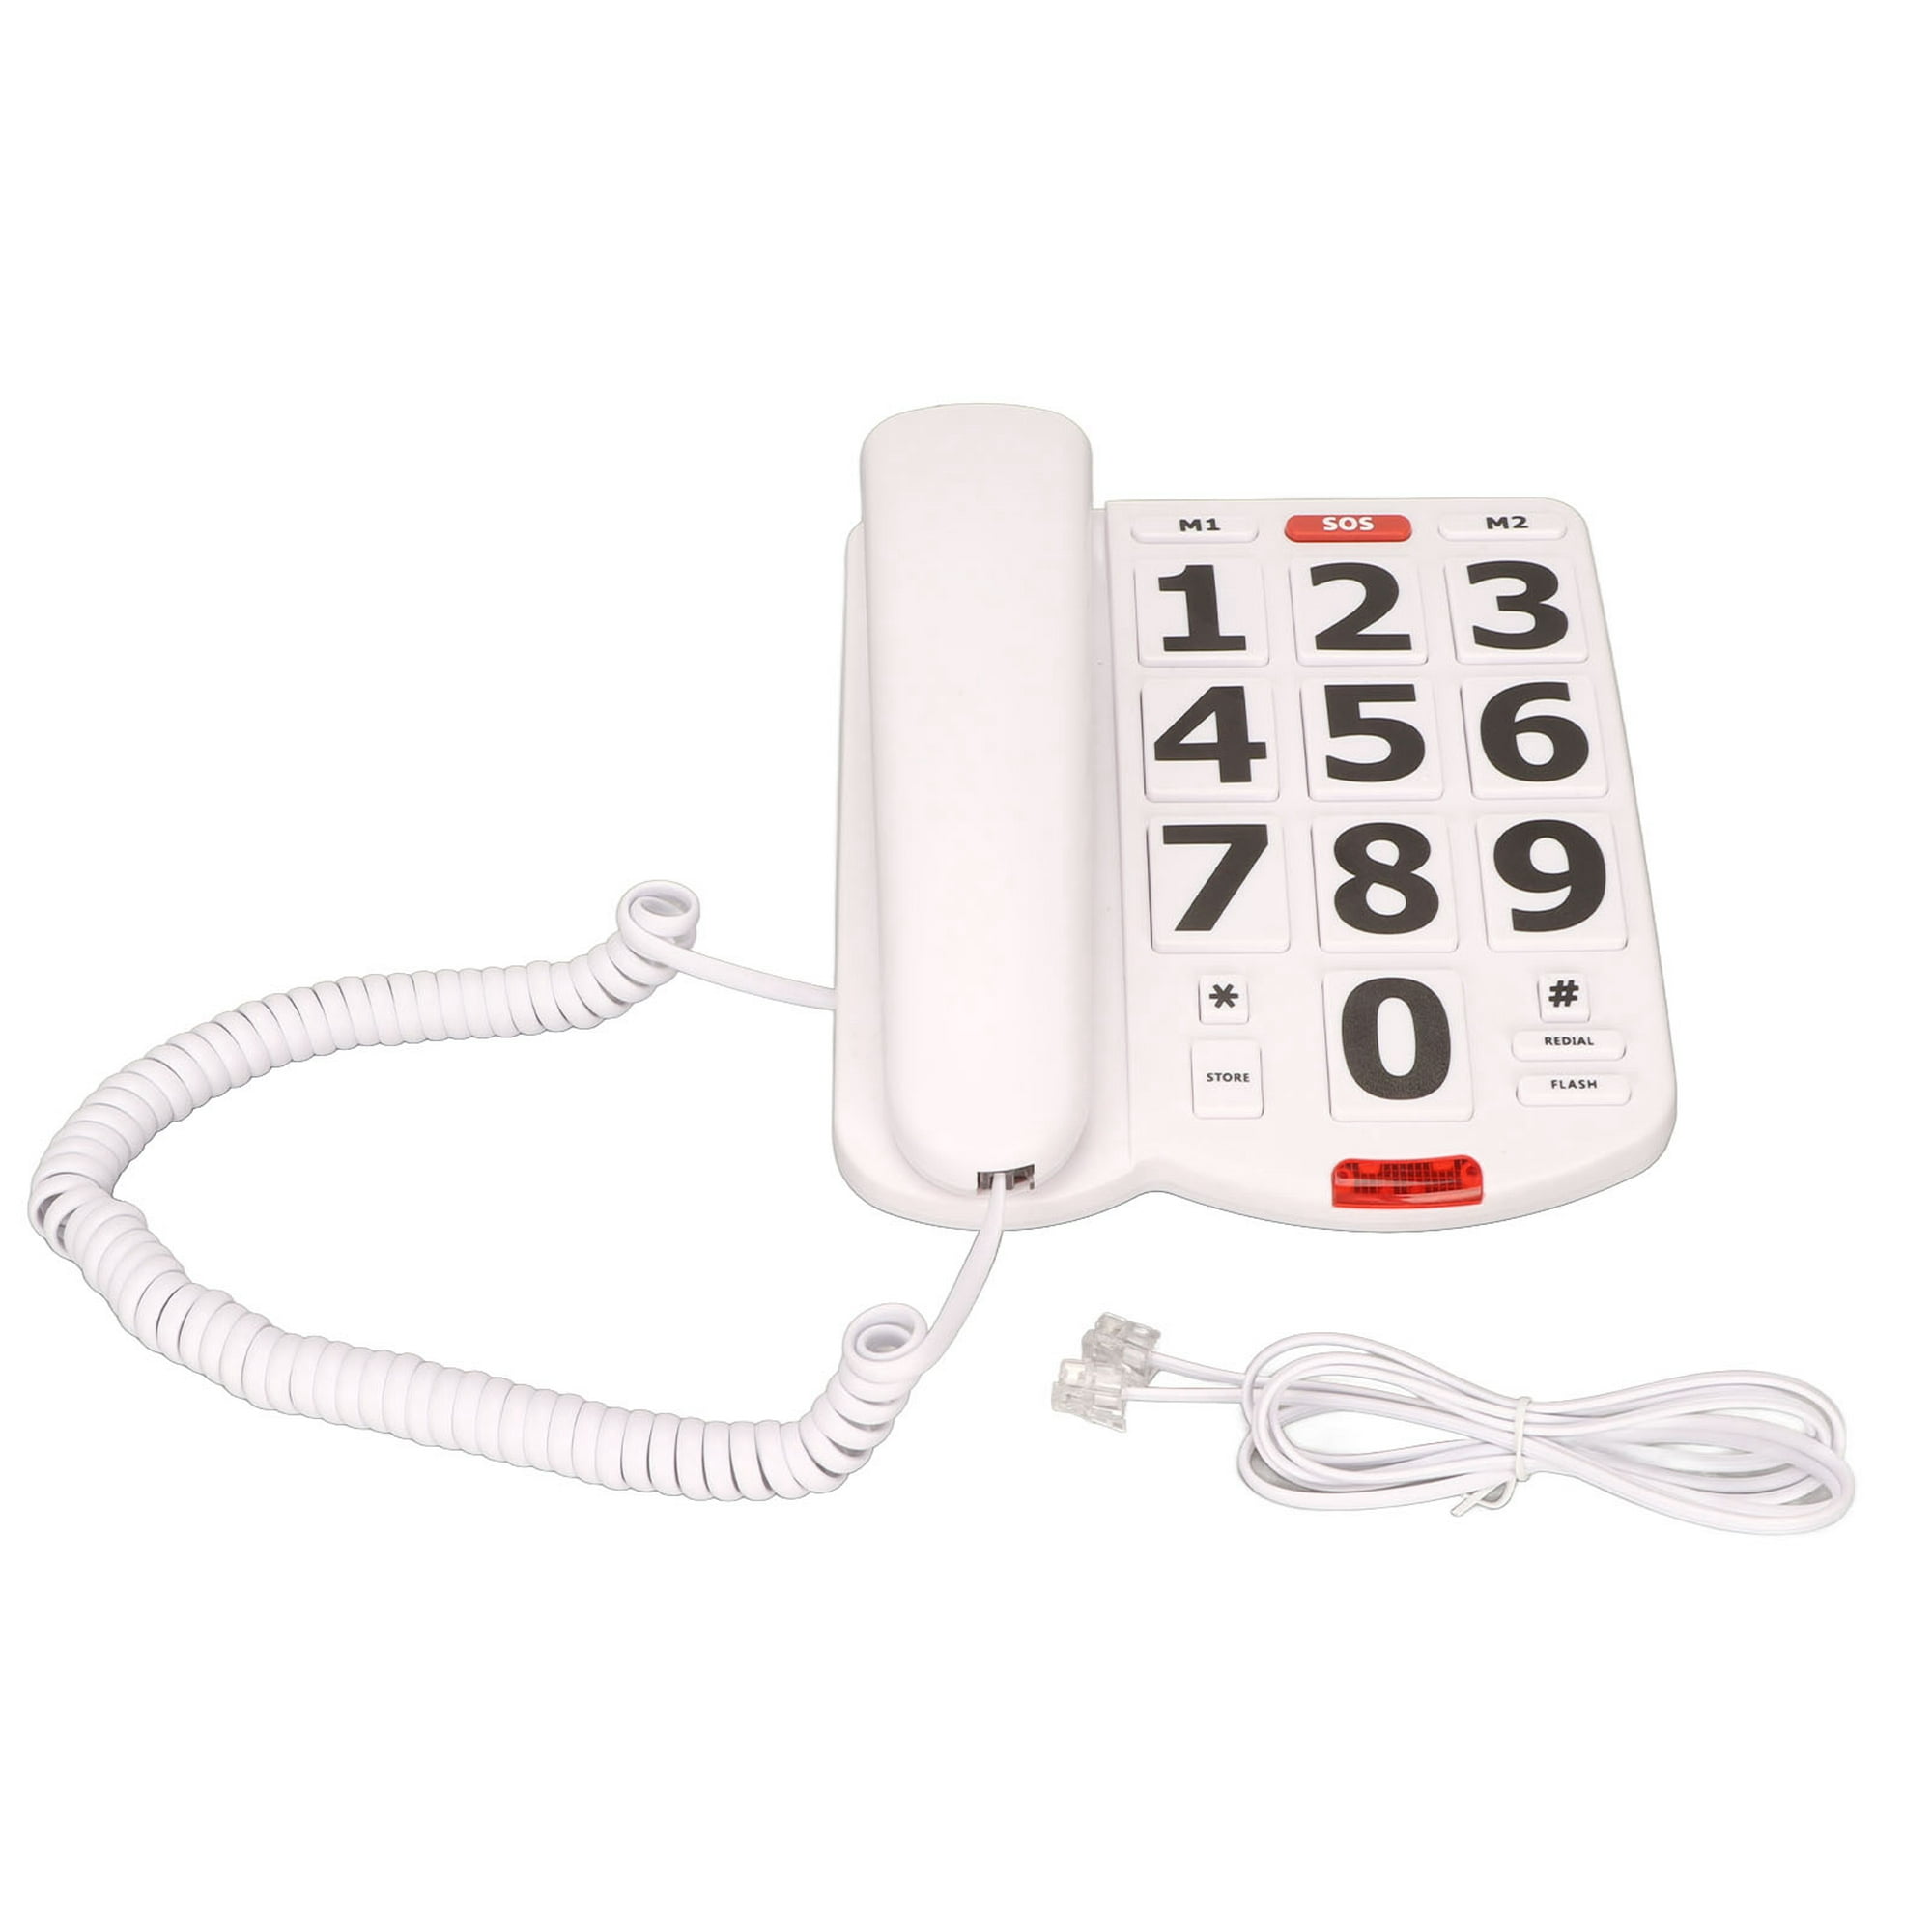 GOWENIC Teléfono con cable de botón grande para personas mayores, teléfono  fijo con sonido claro, silencio de redireccionamiento, volumen ajustable